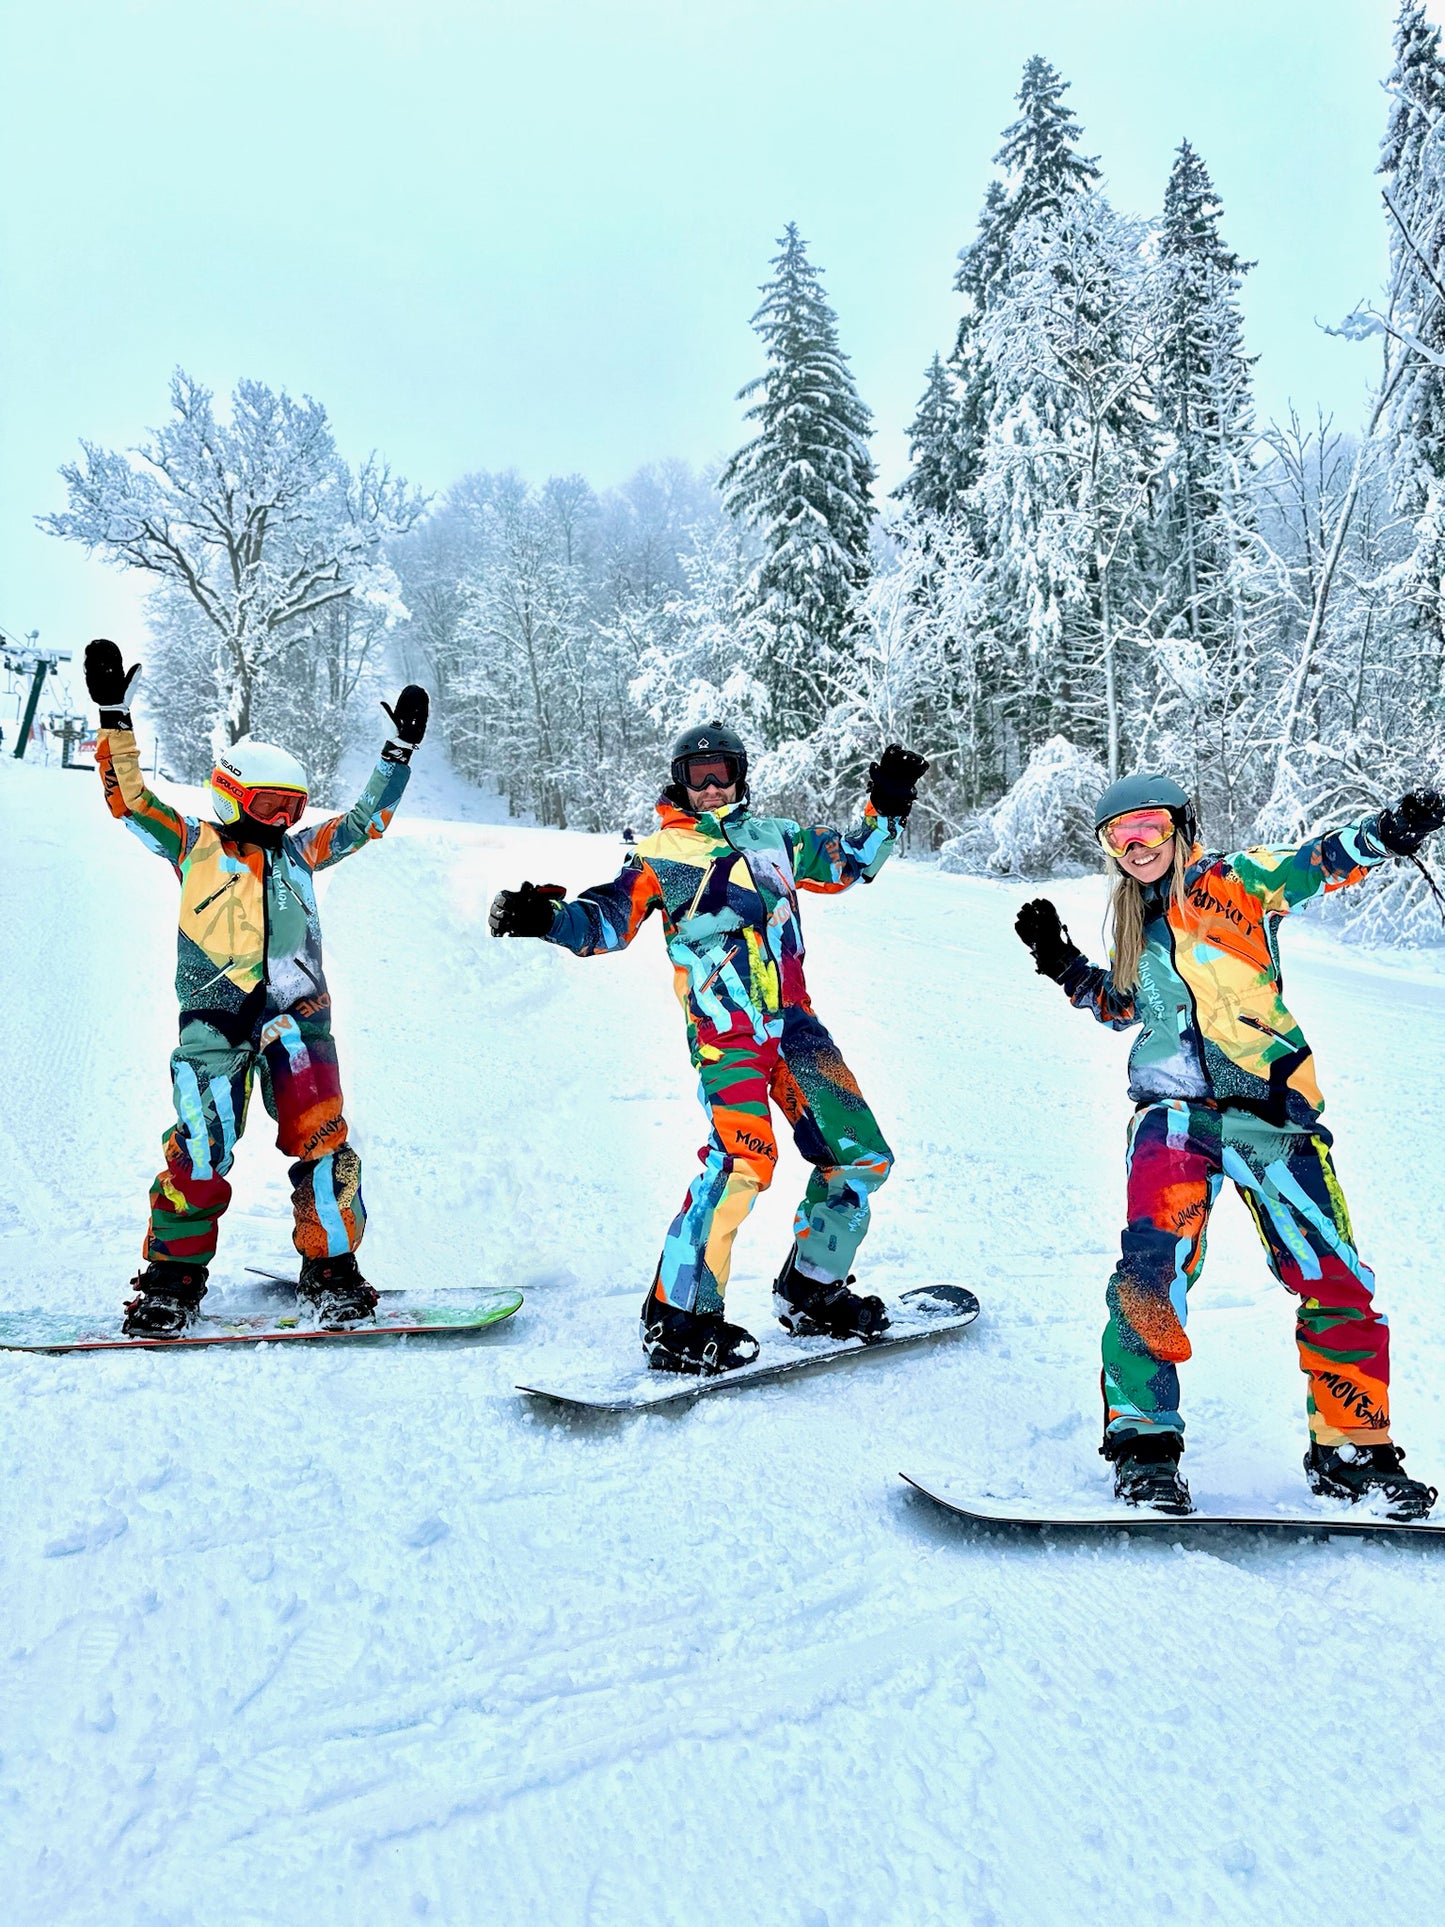 Winter-Ski-Overall für Herren, Snowboard-Kleidung, Snowboard-Anzug, Ski-Overall, Ski-Anzug für Herren, Sportbekleidung, Overall Winter, bunter Schneeanzug